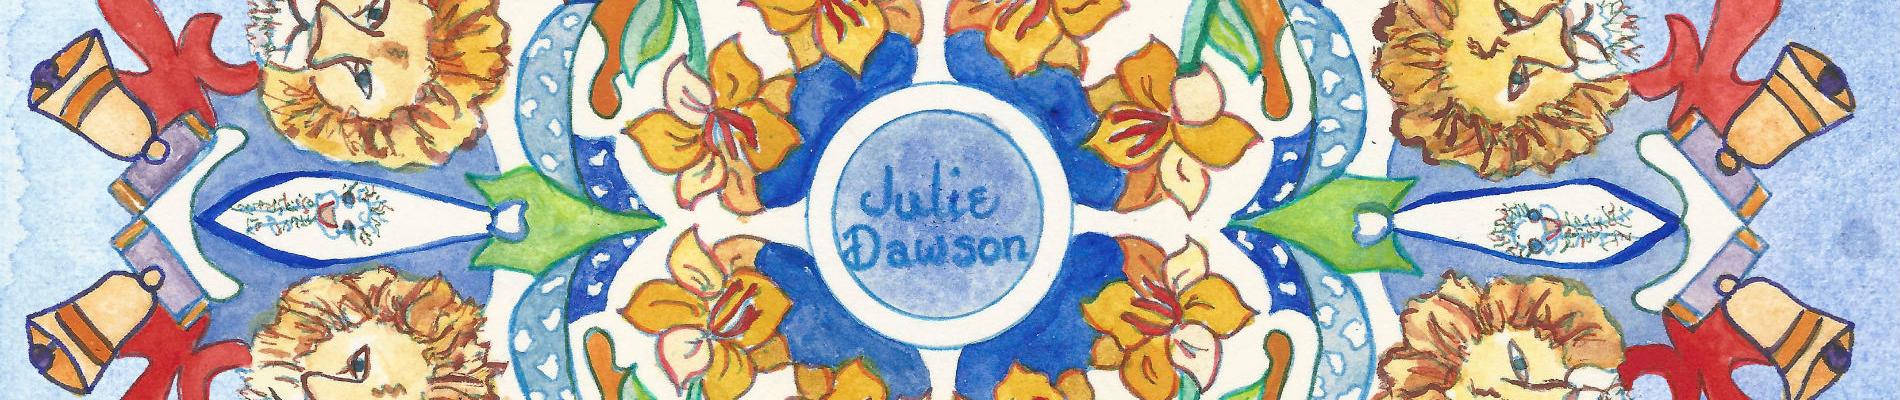 Julie Dawson, Artist, Author & Philanthropist